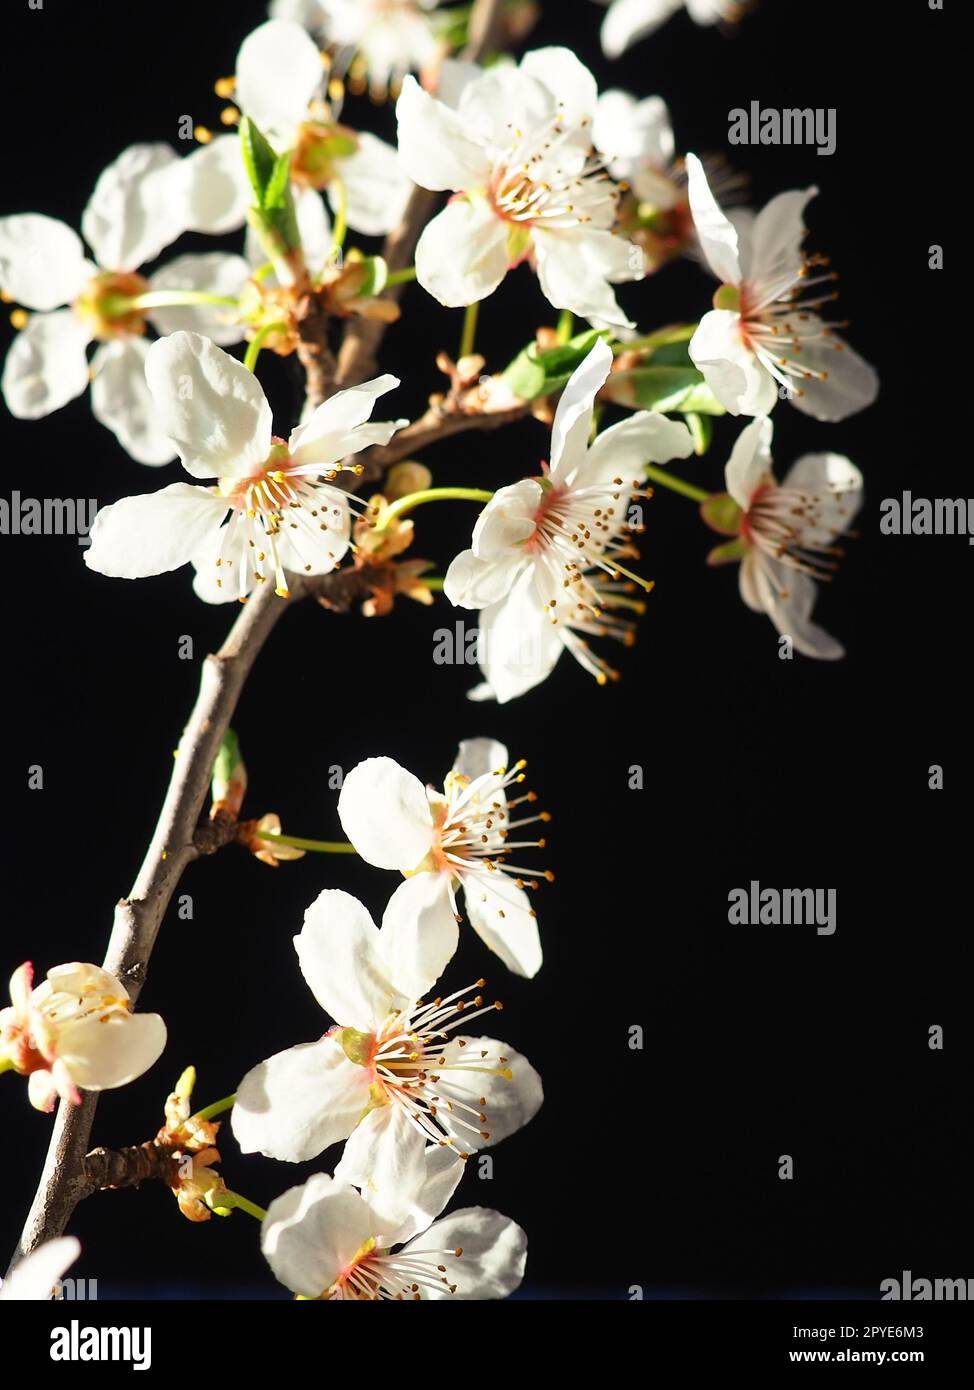 Cerise d'oiseau ou fleurs de cerise sur un fond noir. Gros plan d'une belle branche avec des fleurs blanches. Bouquet de printemps lumineux. Prunus padus, connu sous le nom de cerisier d'oiseau, hackberry, hagberry ou arbre Mayday Banque D'Images